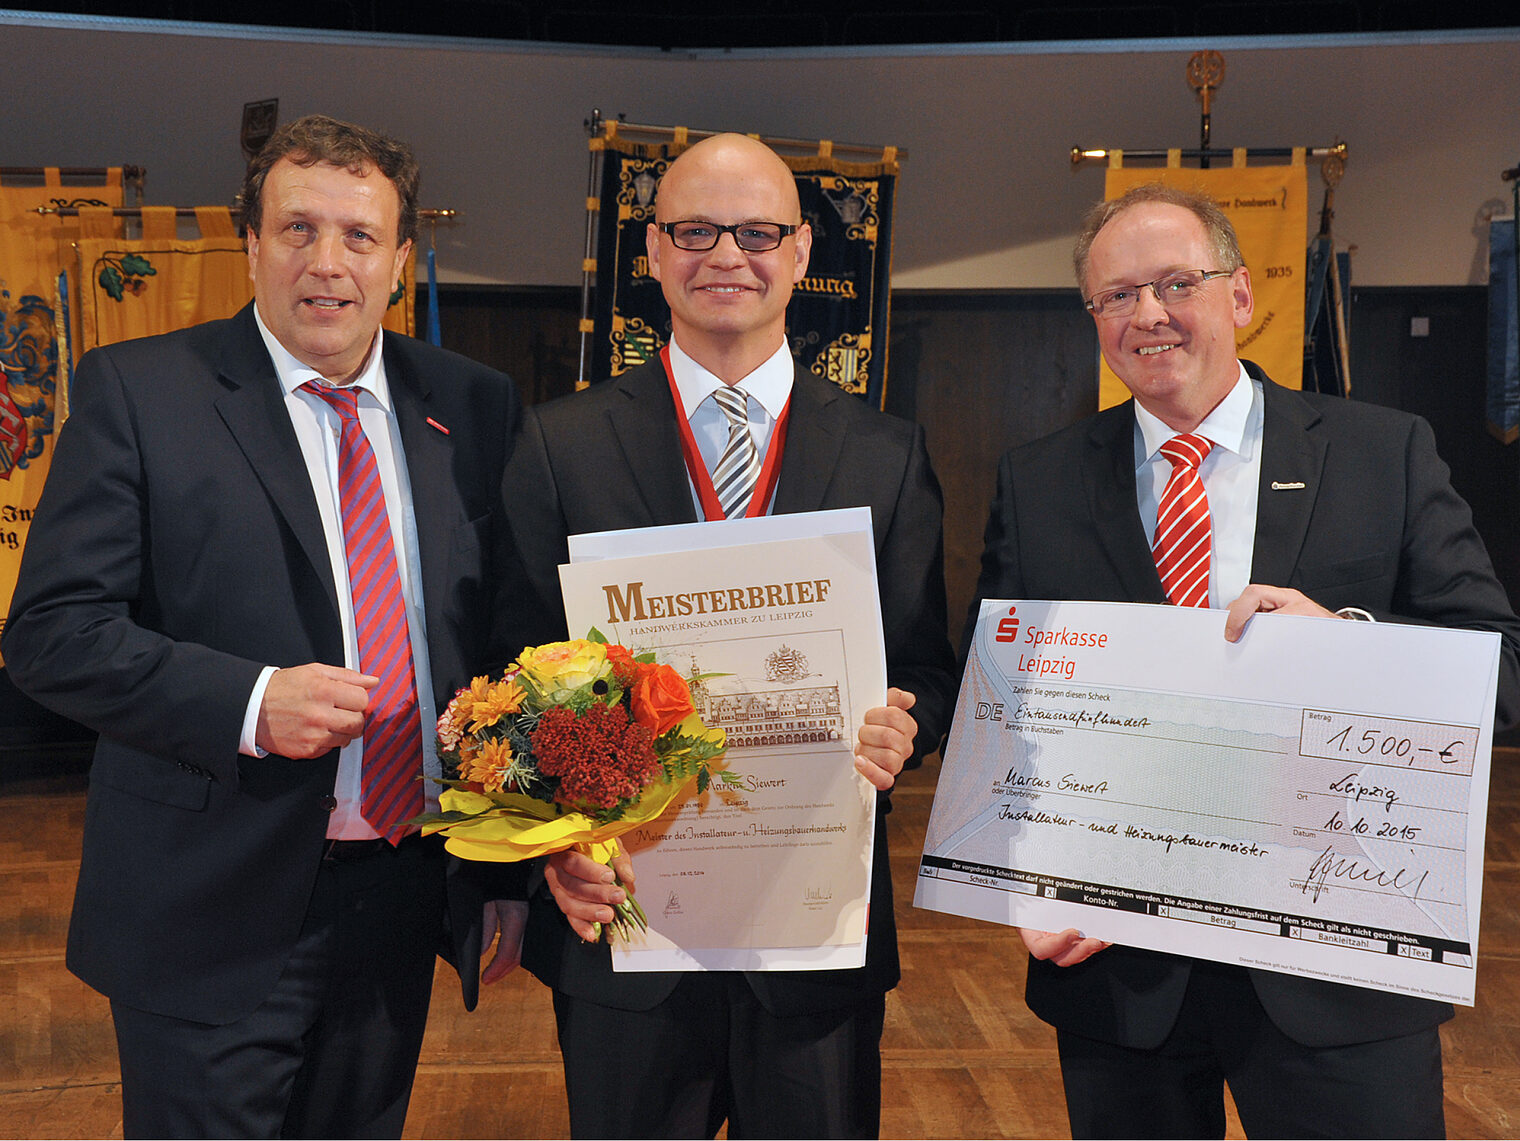 Meisterfeier 2015 der Handwerkskammer zu Leipzig 5